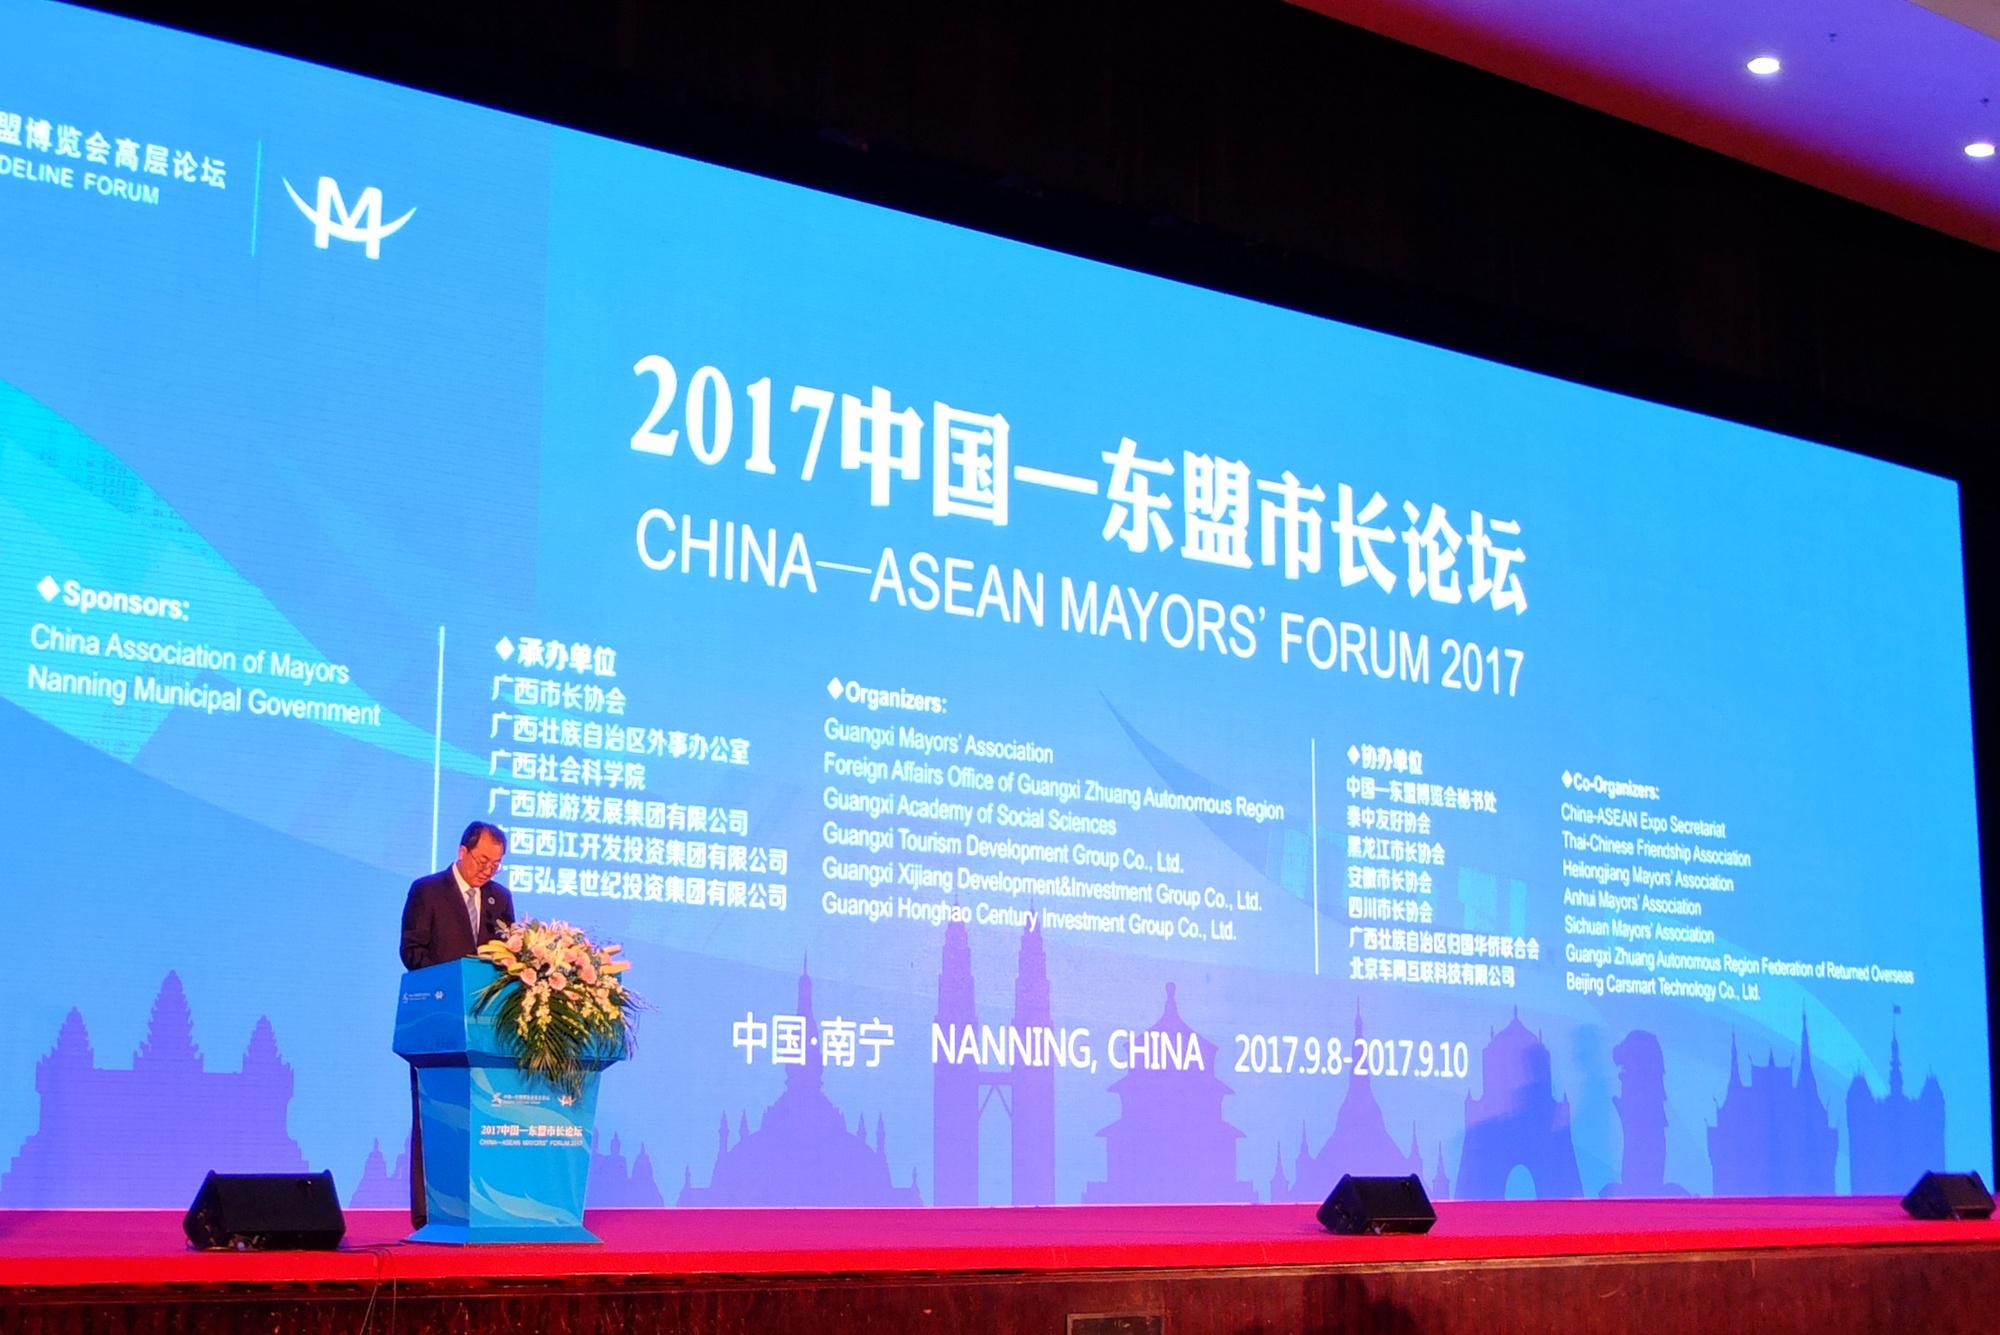 2017年中国-东盟市长论坛共商城市旅游